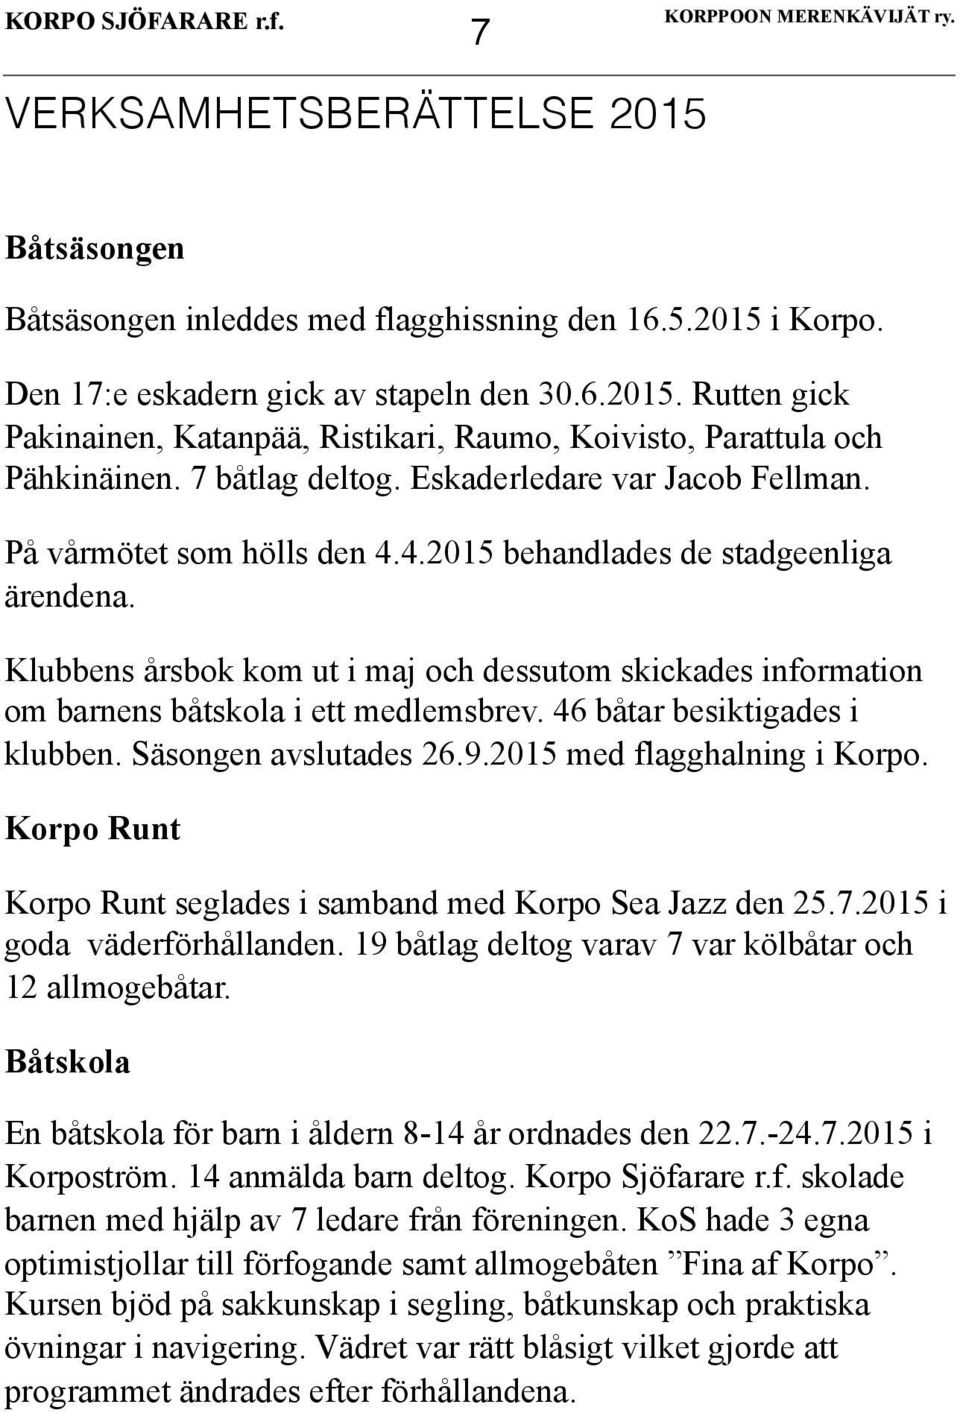 Klubbens årsbok kom ut i maj och dessutom skickades information om barnens båtskola i ett medlemsbrev. 46 båtar besiktigades i klubben. Säsongen avslutades 26.9.2015 med flagghalning i Korpo.